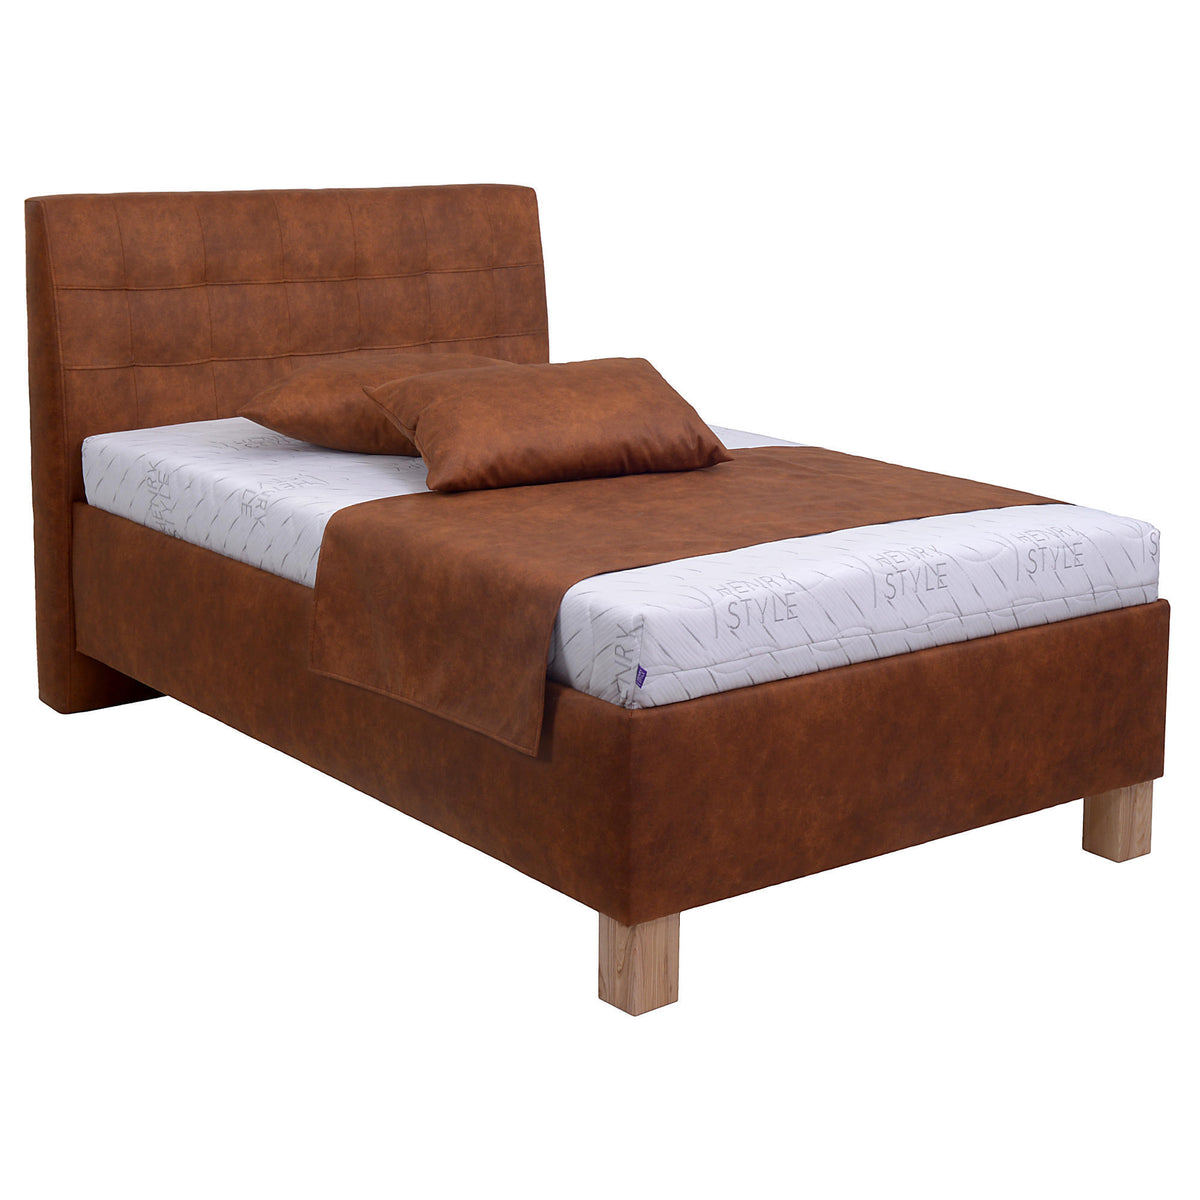 Čalouněná postel Victoria 90x200, hnědá, včetně matrace